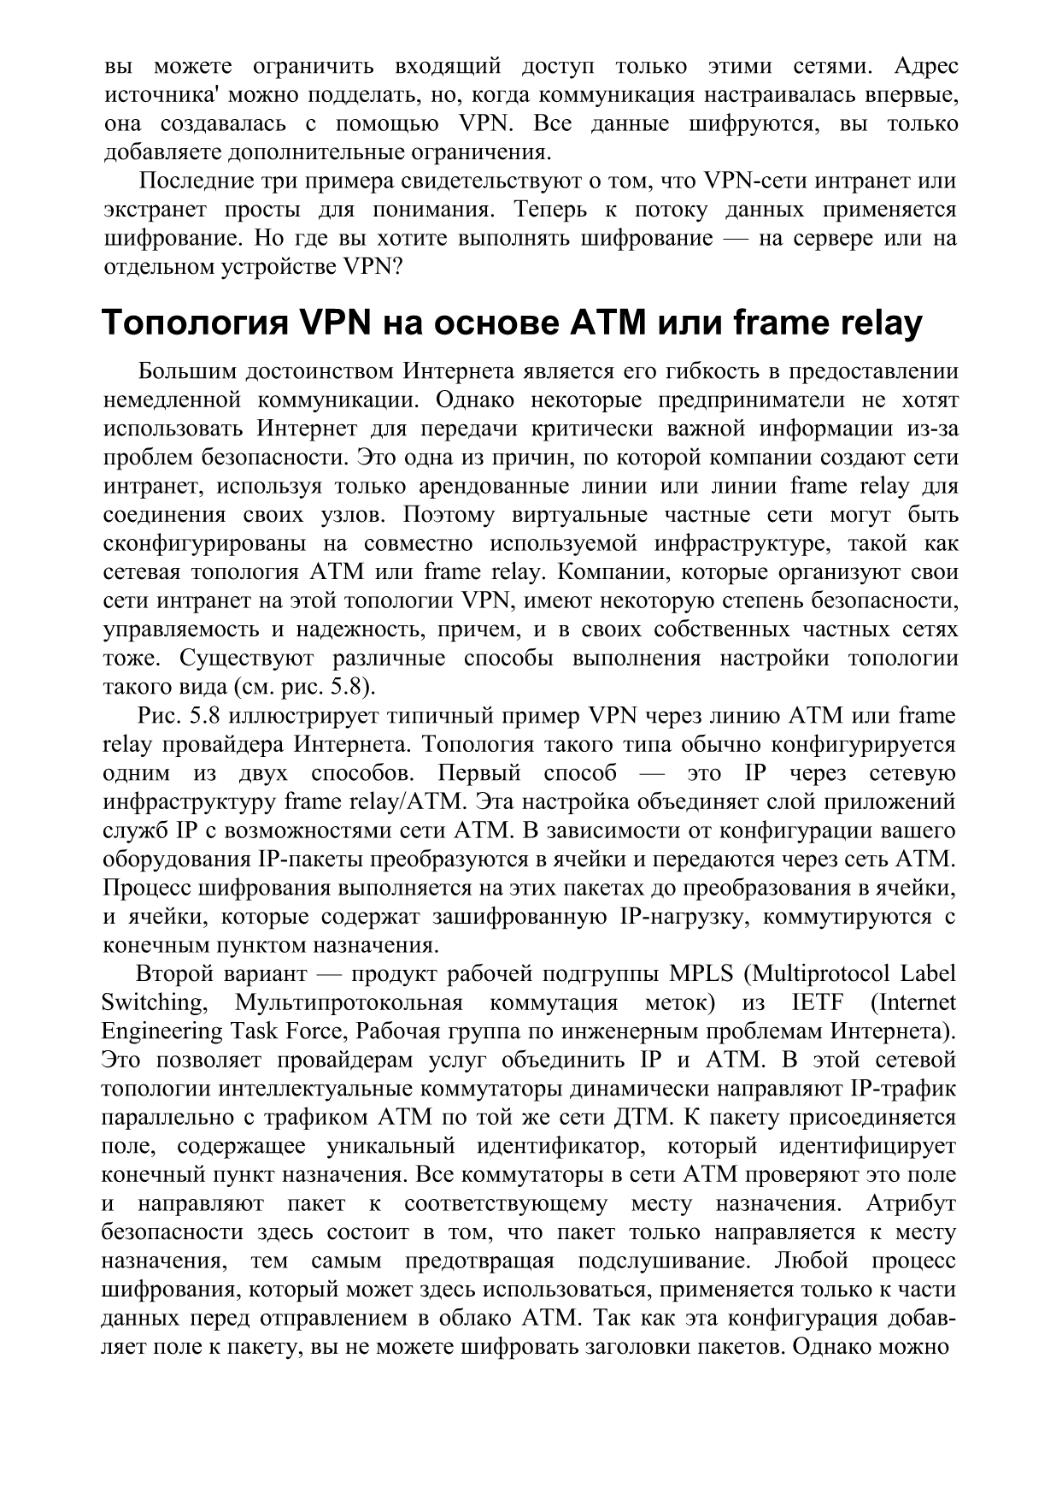 Топология VPN на основе ATM или frame relay